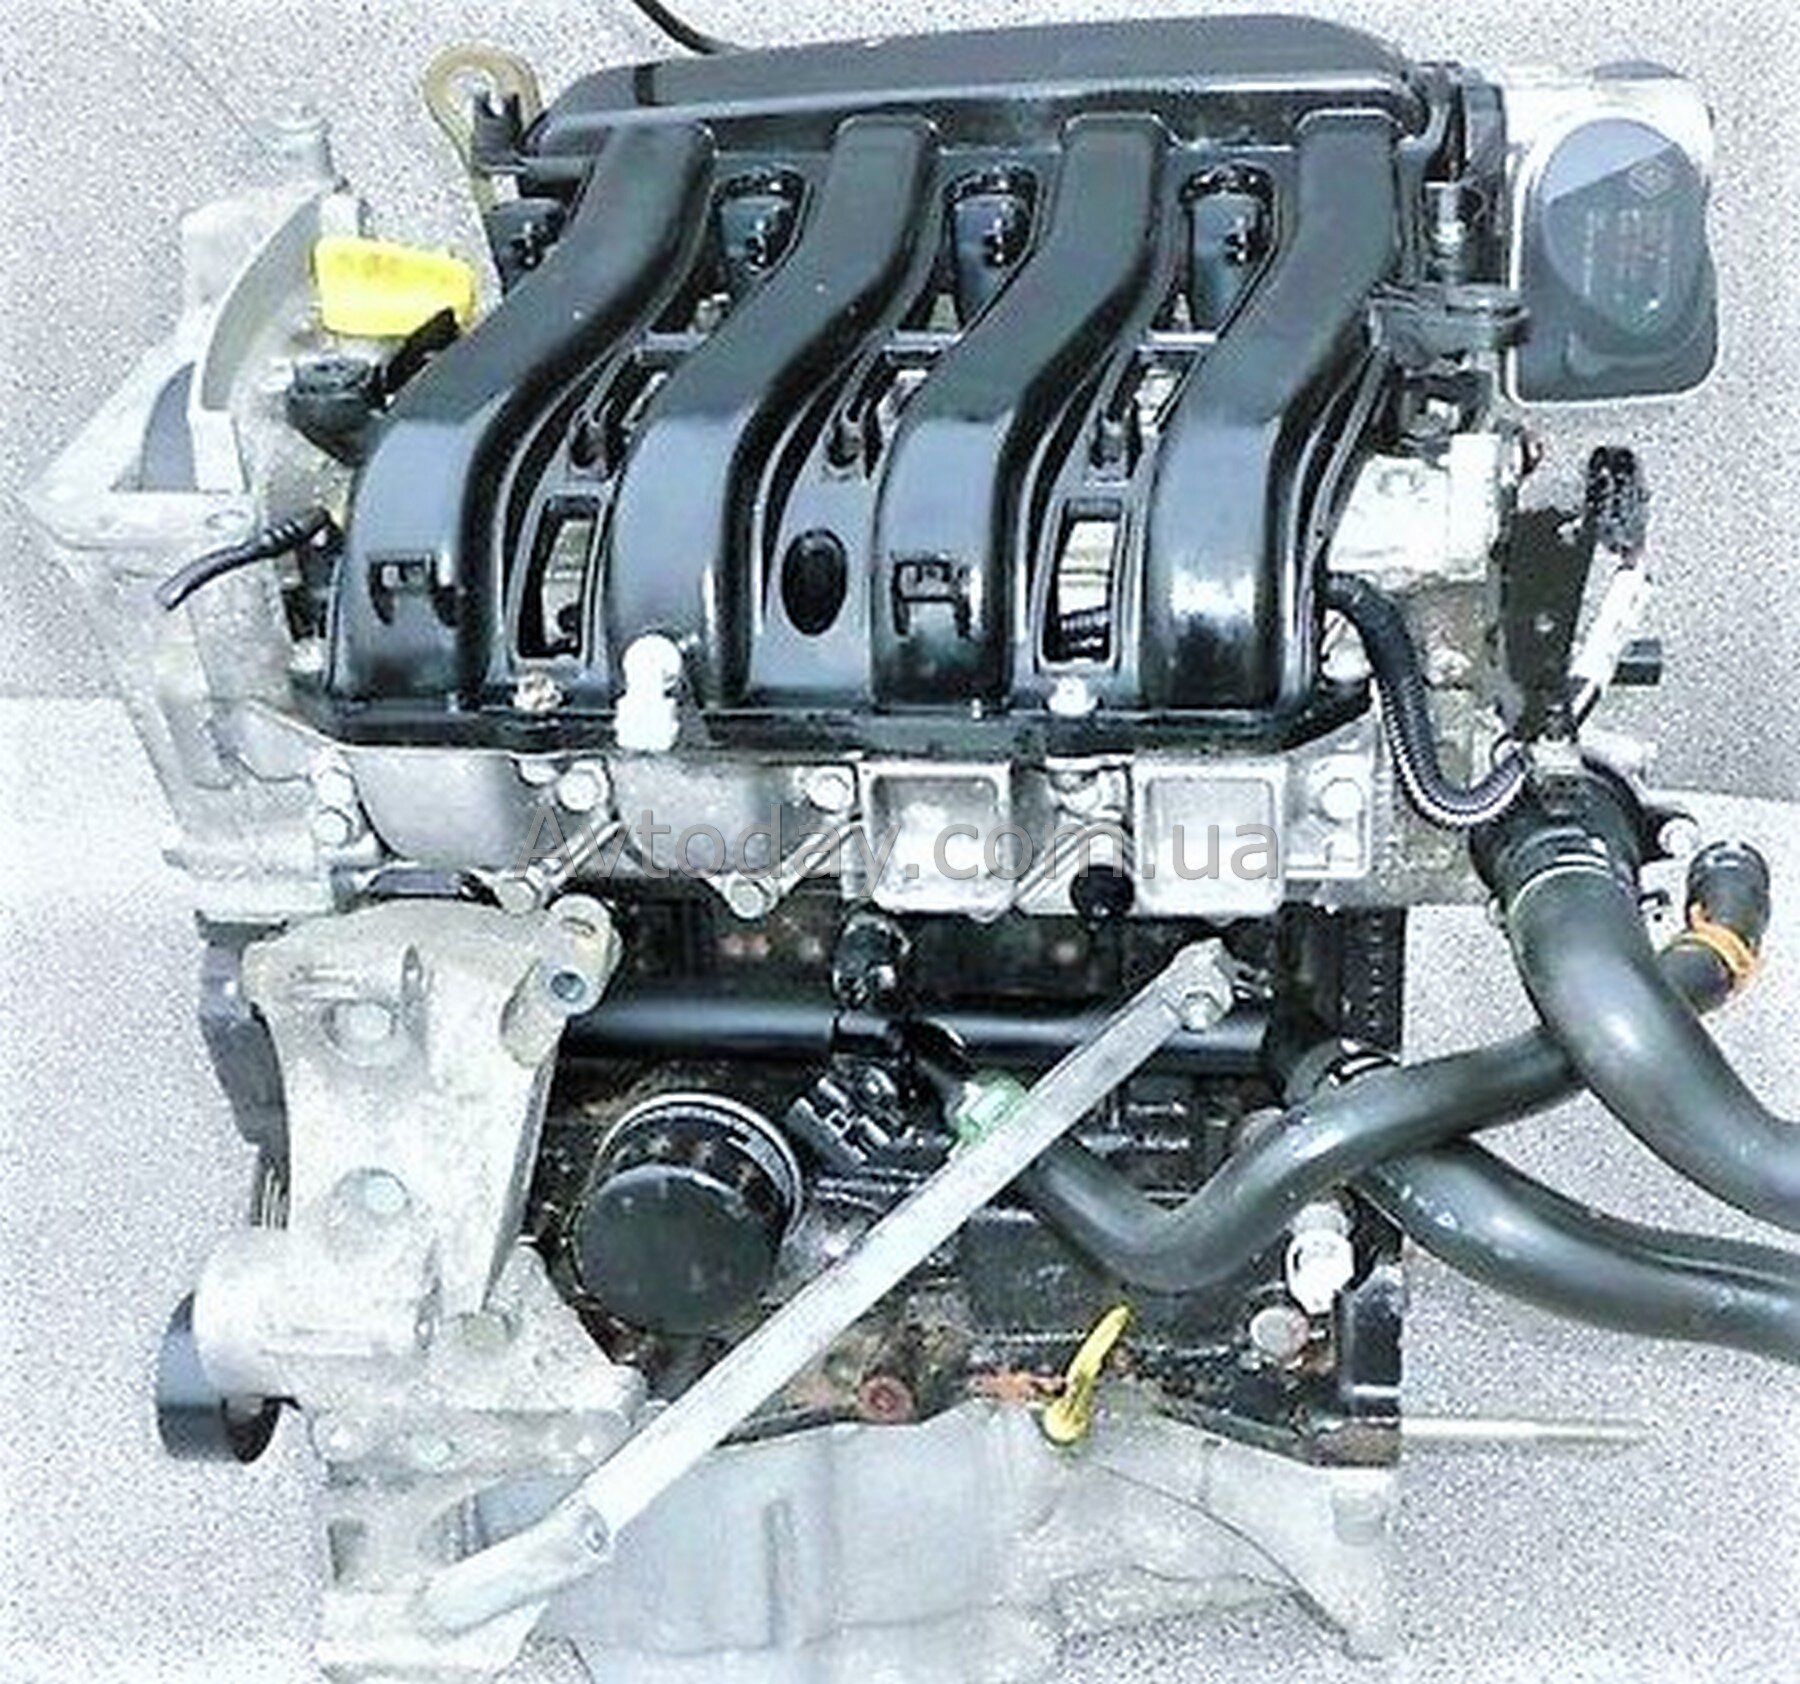 Ремонт двигателя к4м. Renault k4m 1.6 л 16 клапанов. Двигатель Рено Меган 1.6 16 клапанов. Двигатель Рено 1 6 16кл. Двигатель Renault 1.6 (k4m.